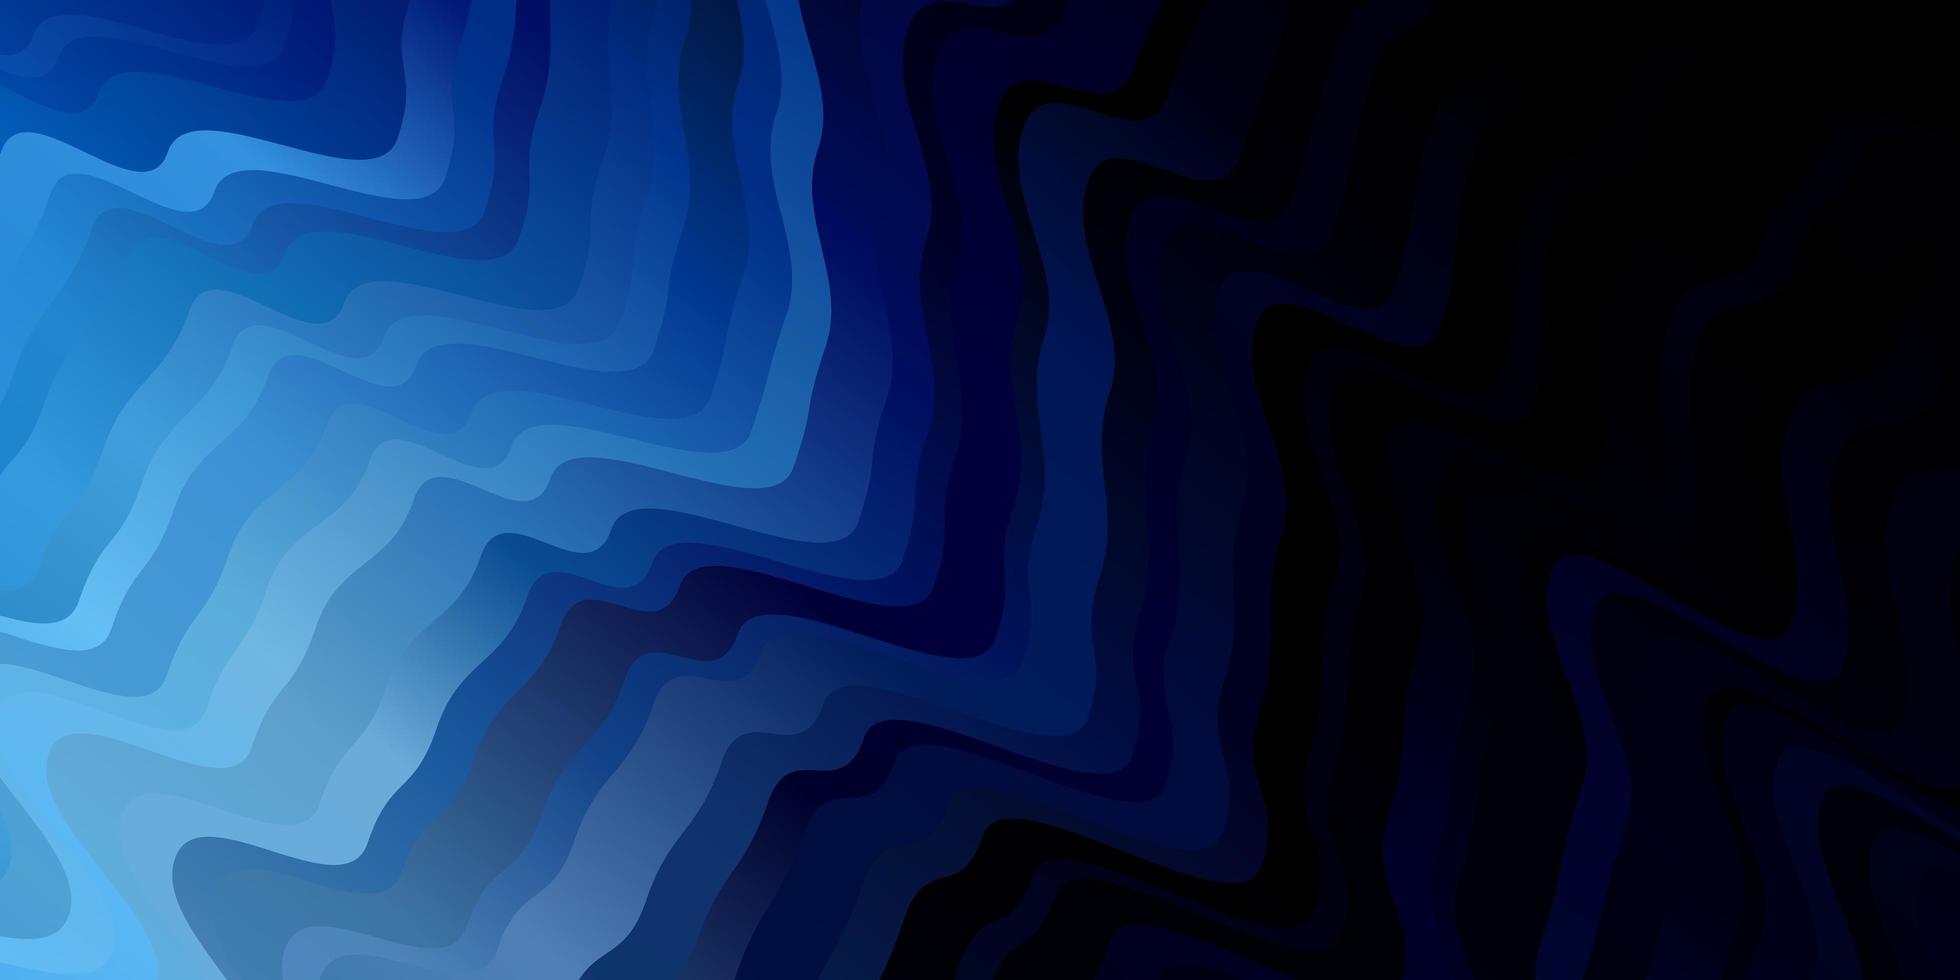 motif vectoriel bleu foncé avec des lignes courbes illustration colorée dans un style abstrait avec des lignes courbes pour la promotion de votre entreprise